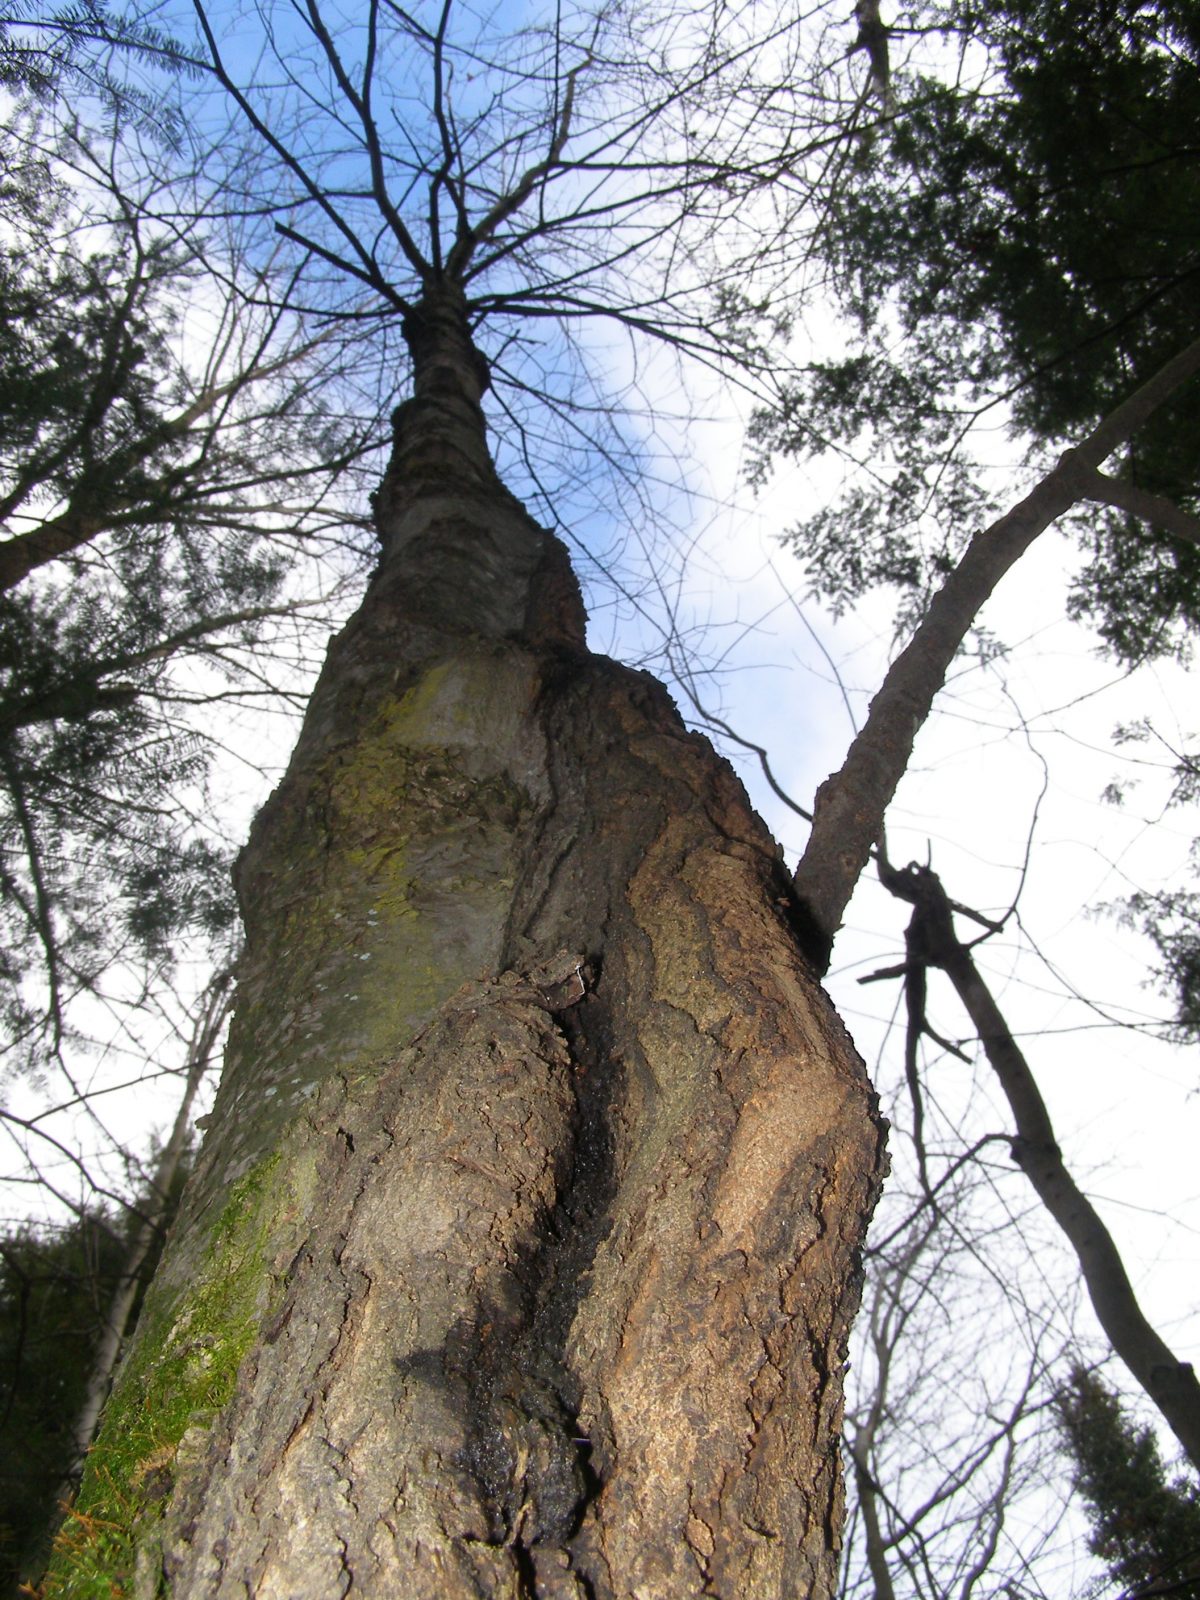 Forêt Drummond : une orientation sera dégagée en 2016